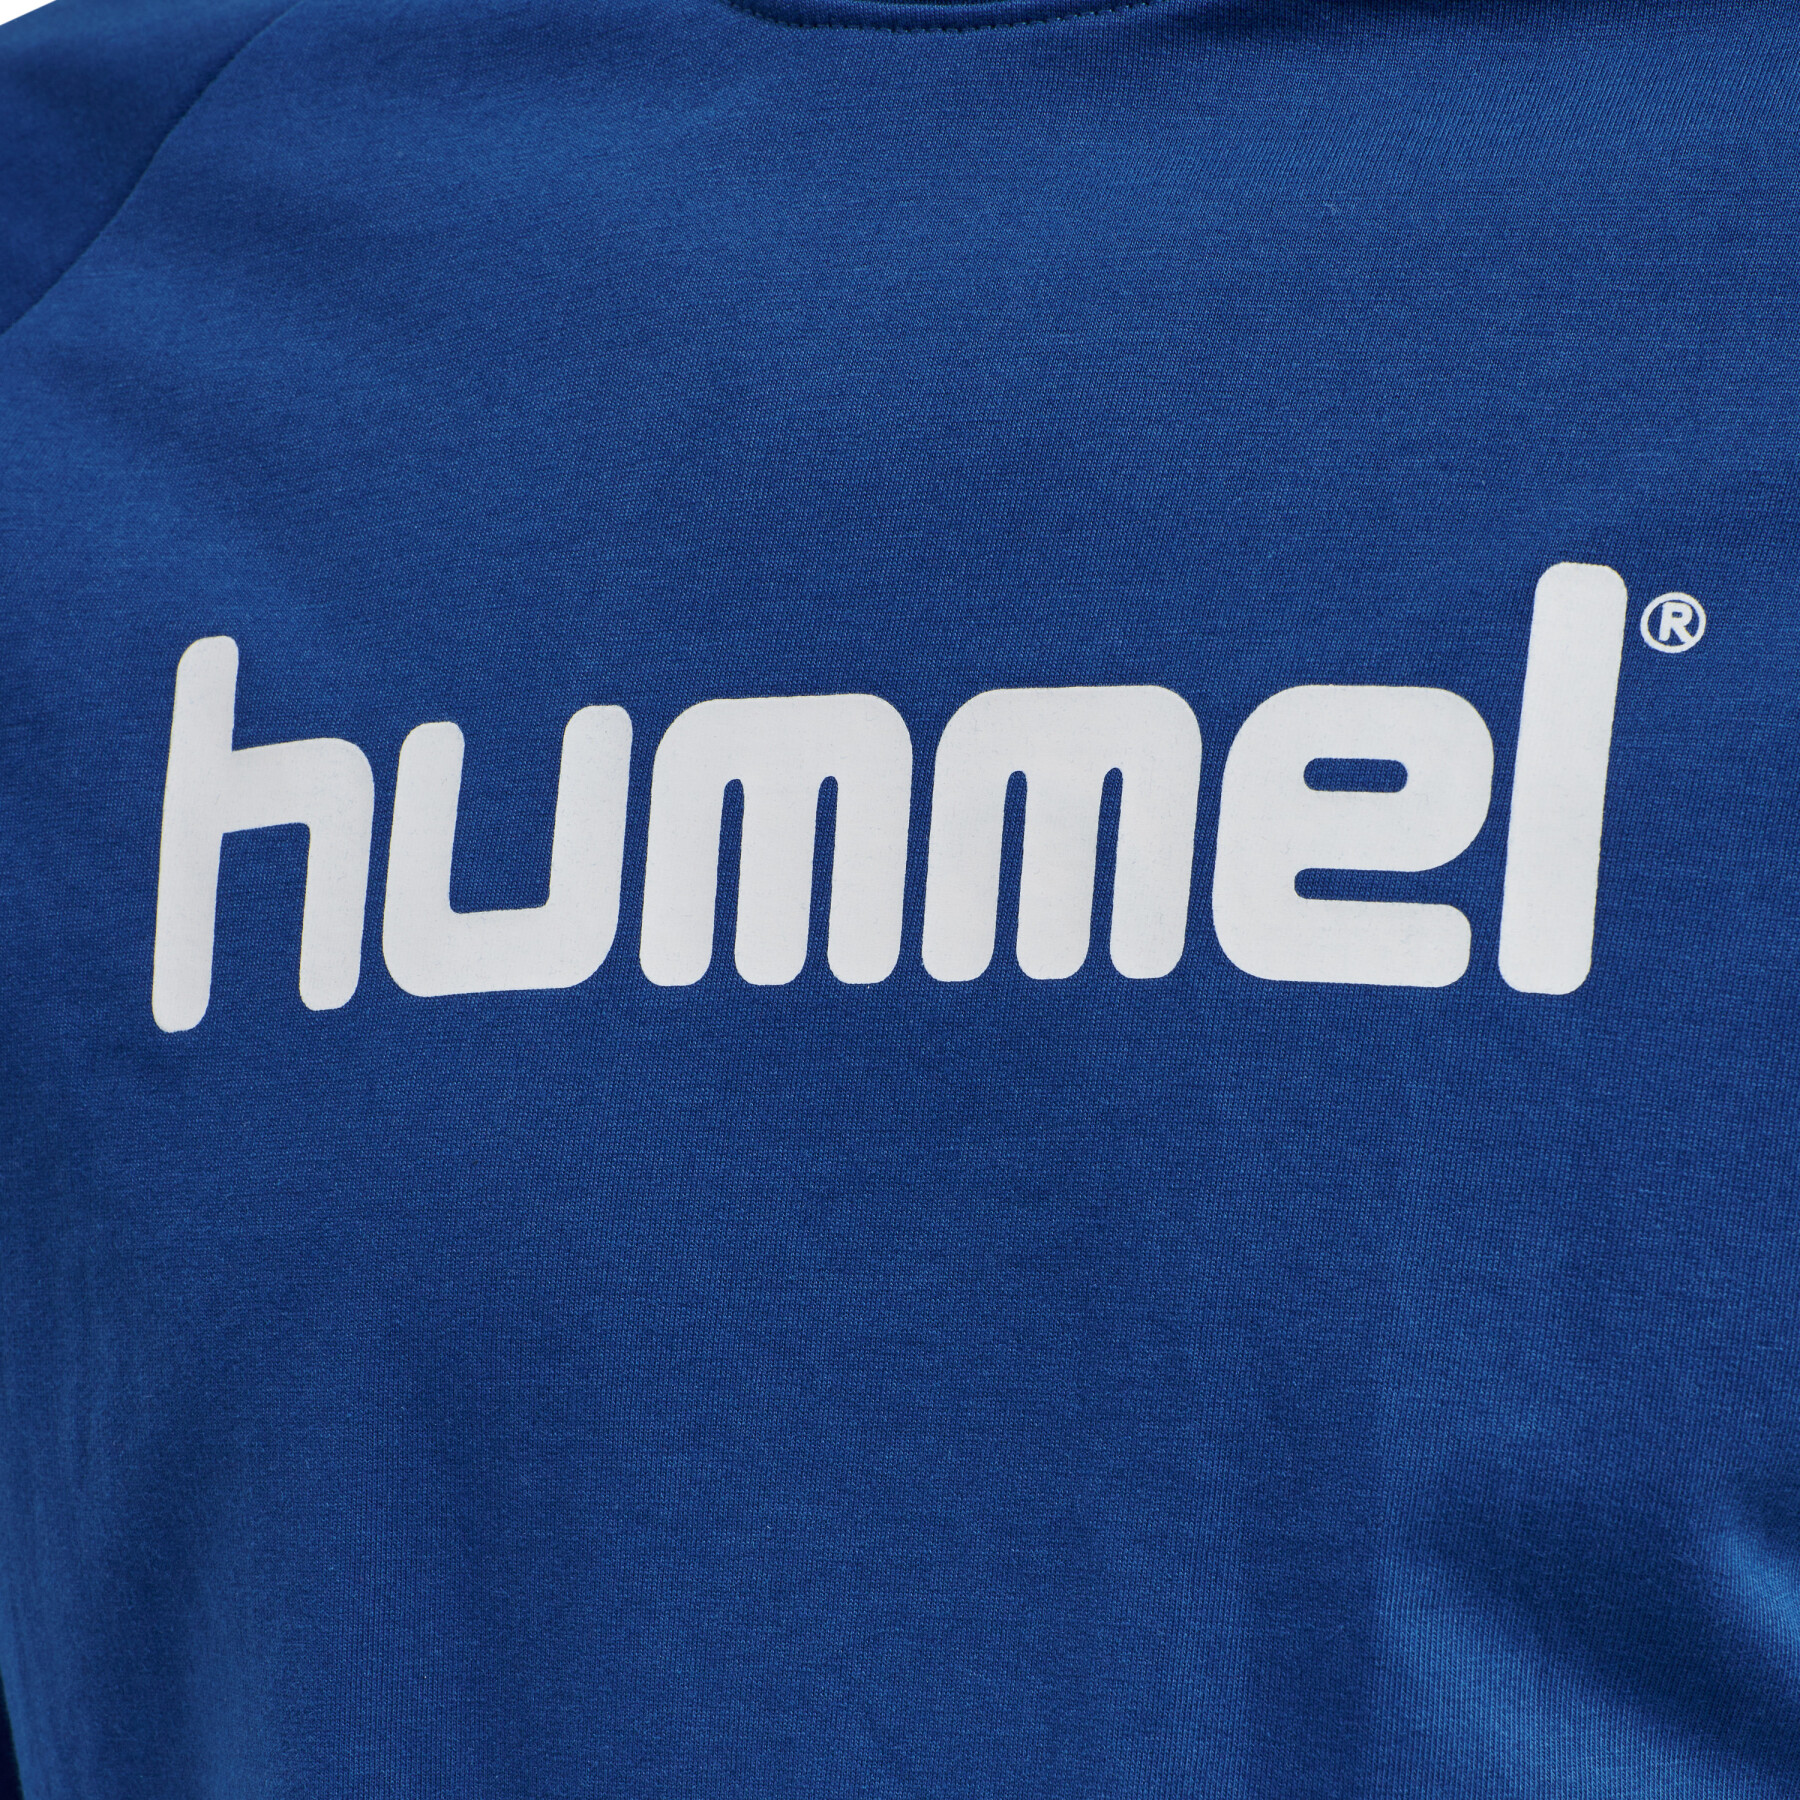 Sweatshirt woman Hummel Cotton Logo - Hummel - Brands - Handball wear